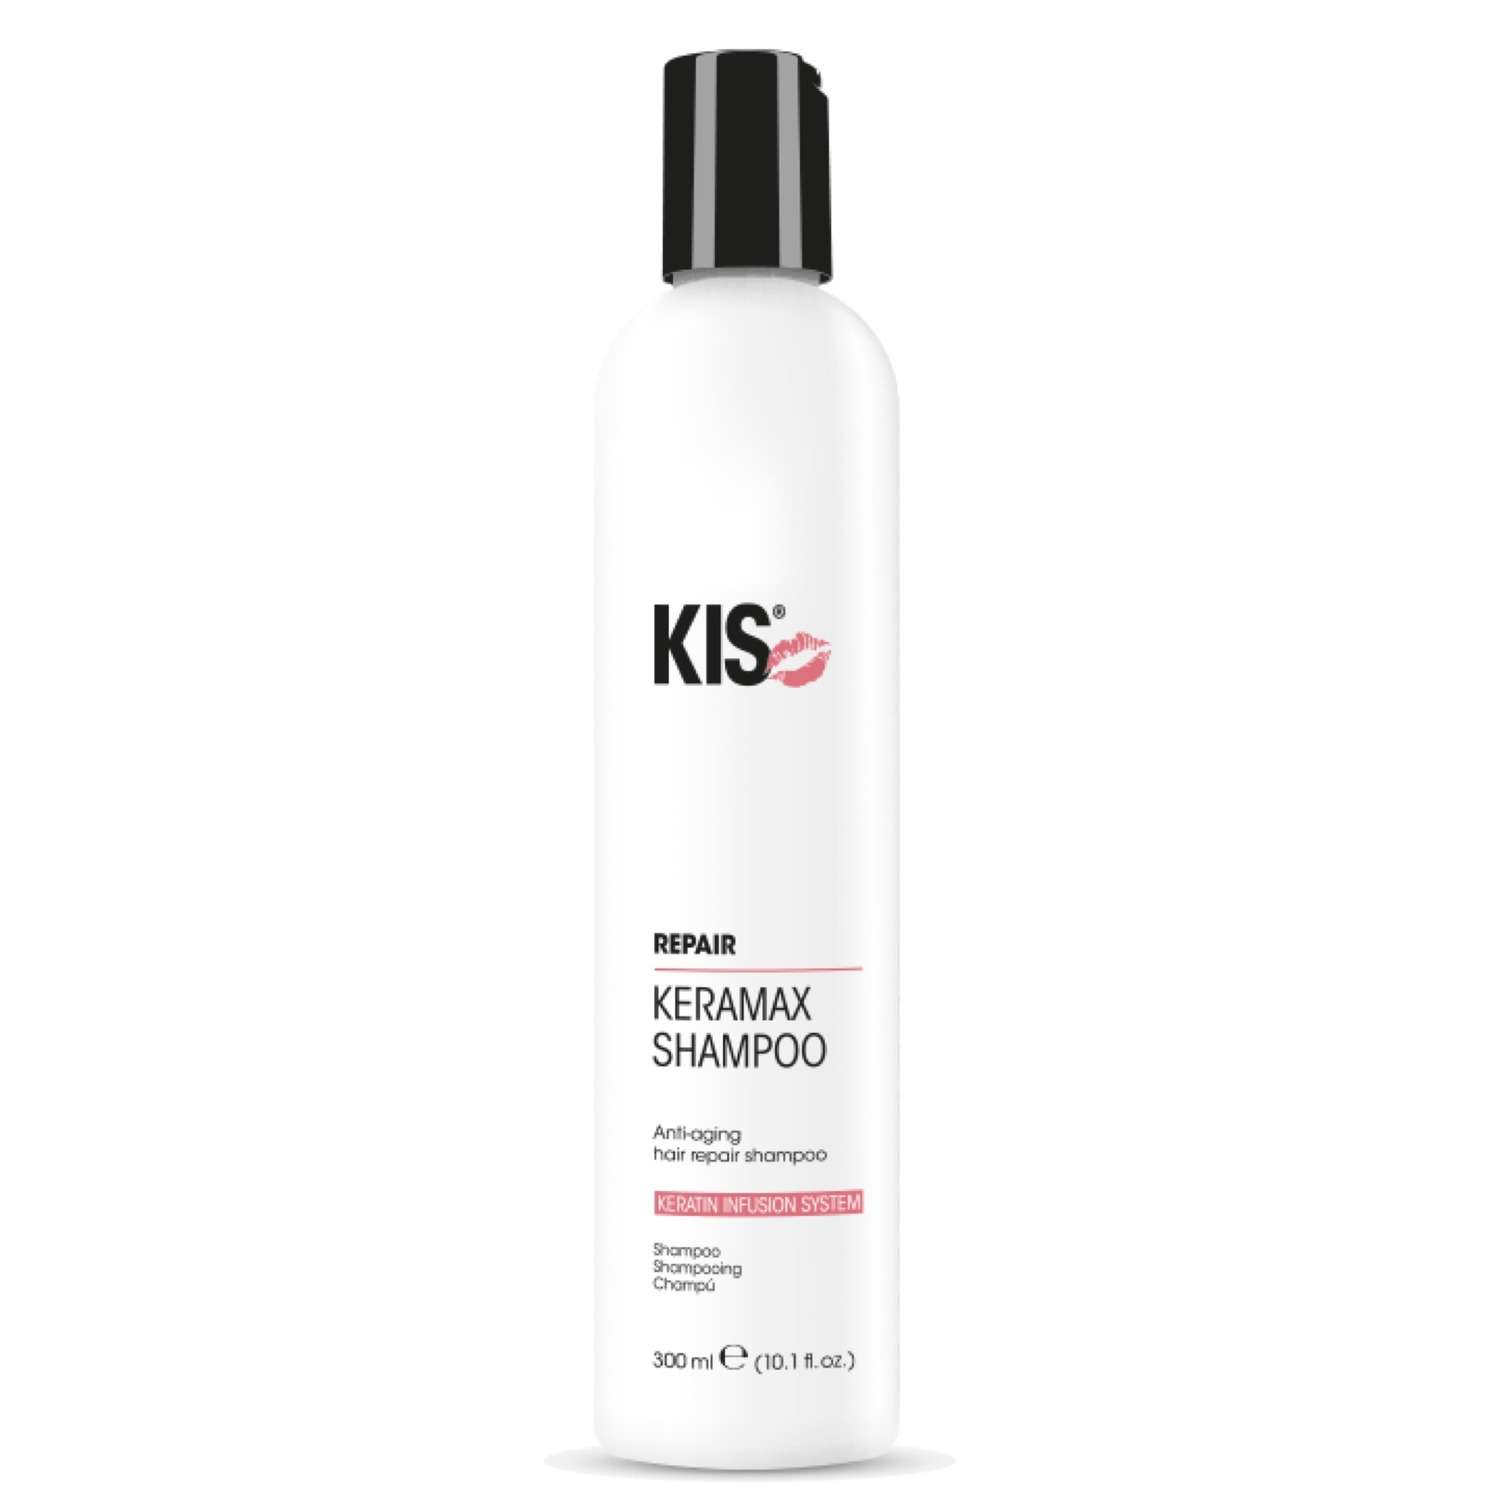 Шампунь KIS KeraMax Shampoo - профессиональный кератиновый восстанавливающий шампунь - фото 1